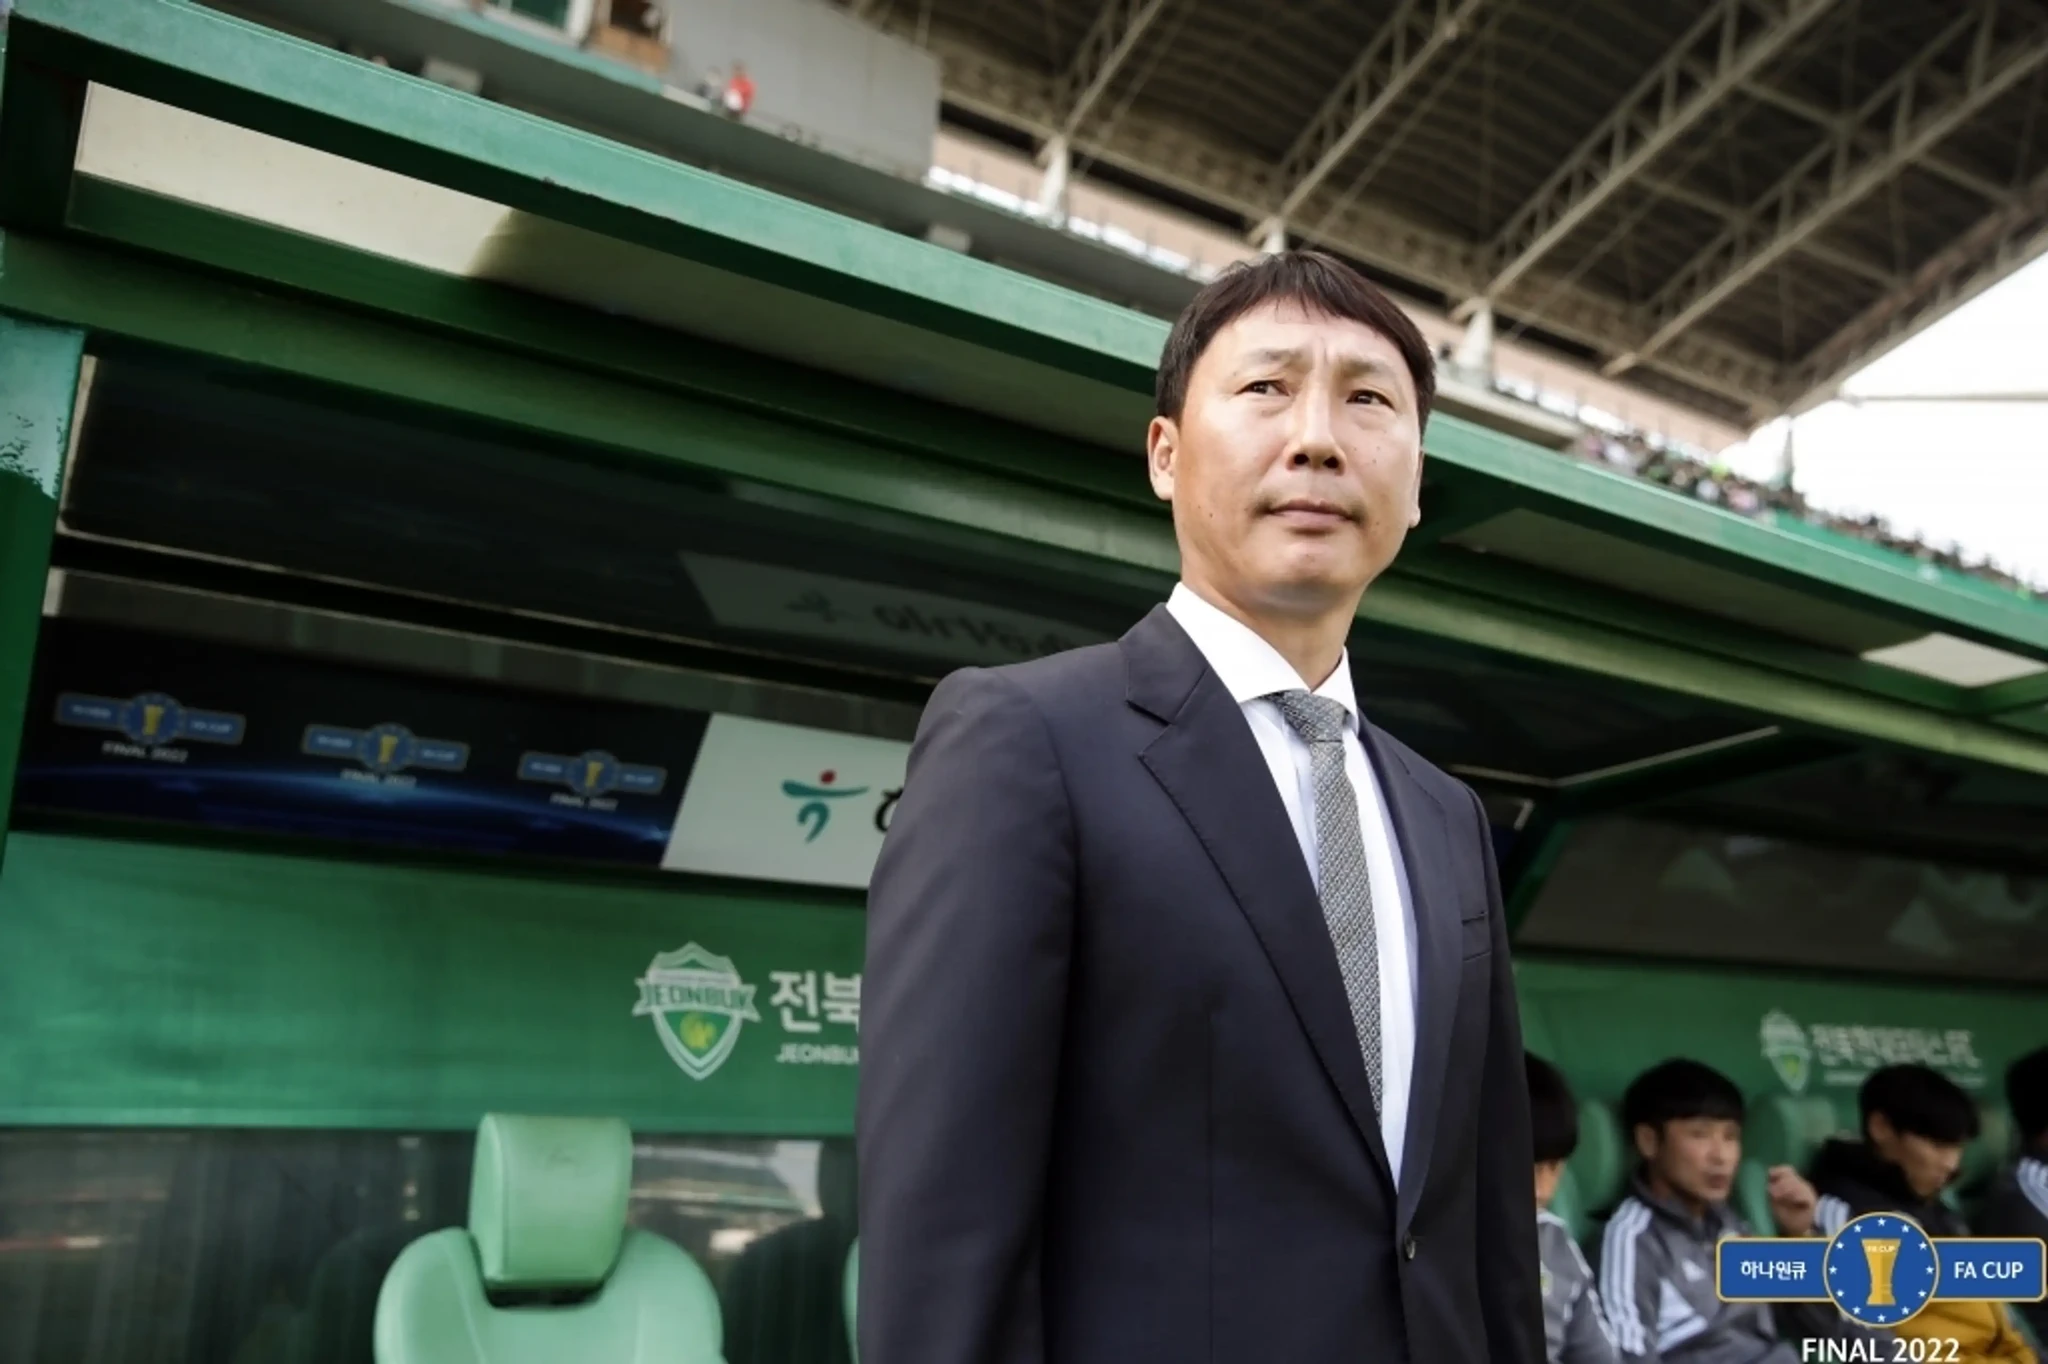 Truyền thông Hàn Quốc gửi lời chúc đặc biệt đến HLV Kim Sang-sik, tin học trò ông Park tỏa sáng